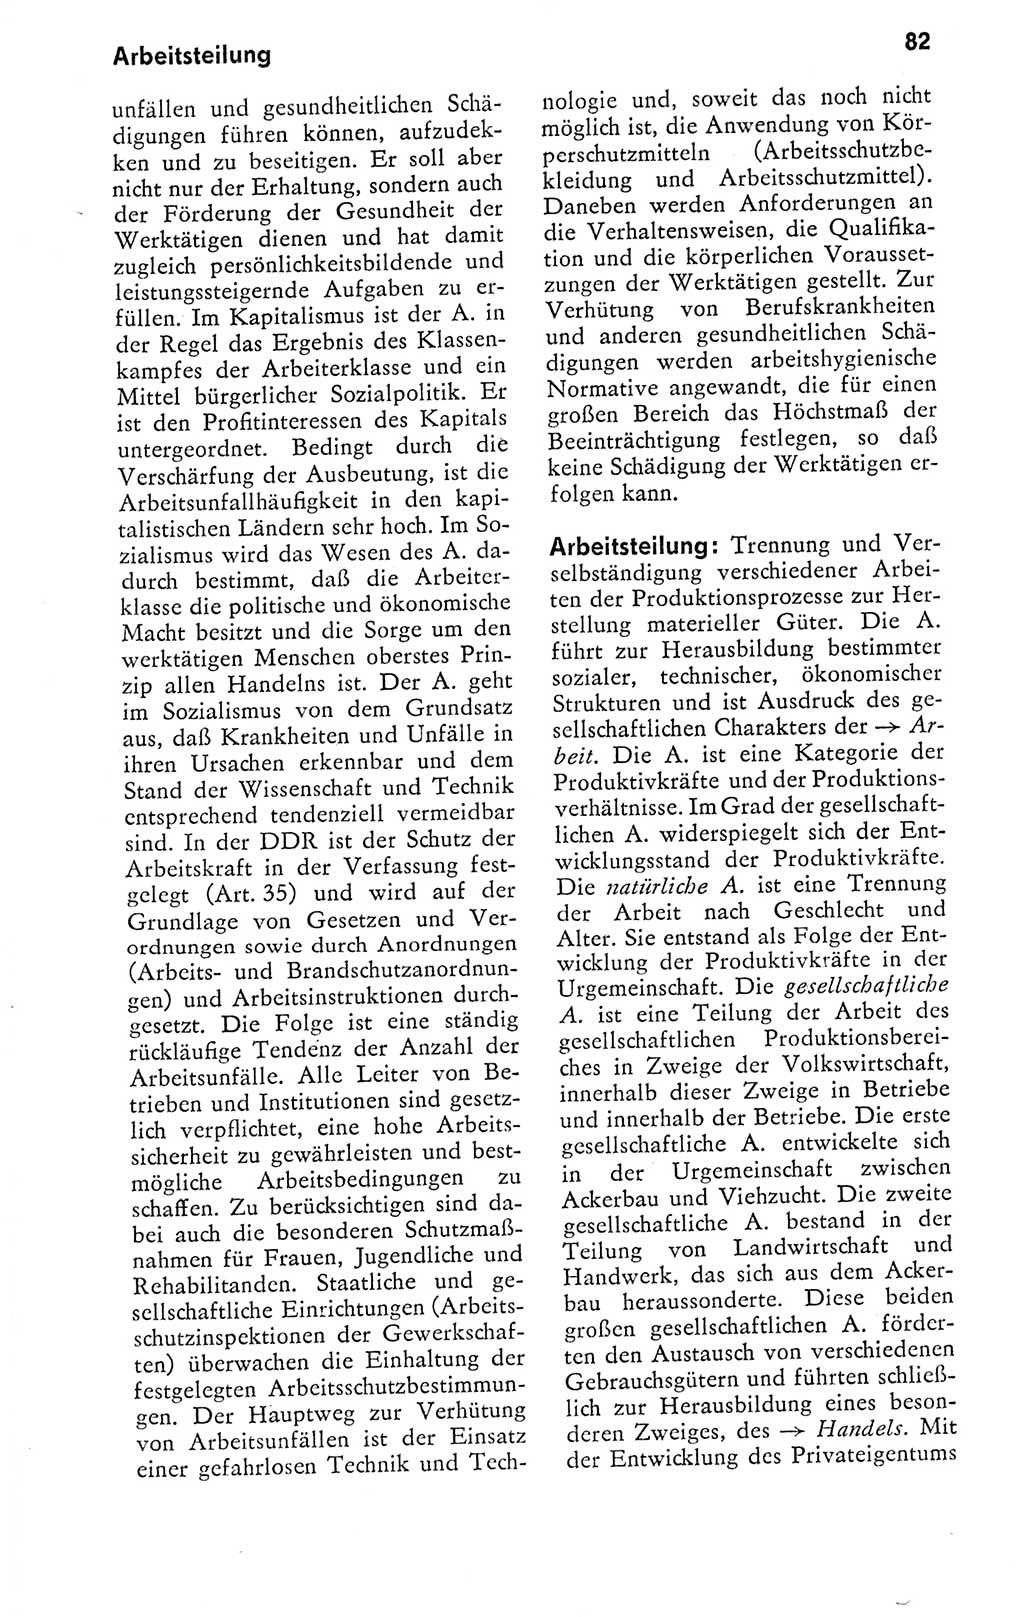 Kleines politisches Wörterbuch [Deutsche Demokratische Republik (DDR)] 1978, Seite 82 (Kl. pol. Wb. DDR 1978, S. 82)